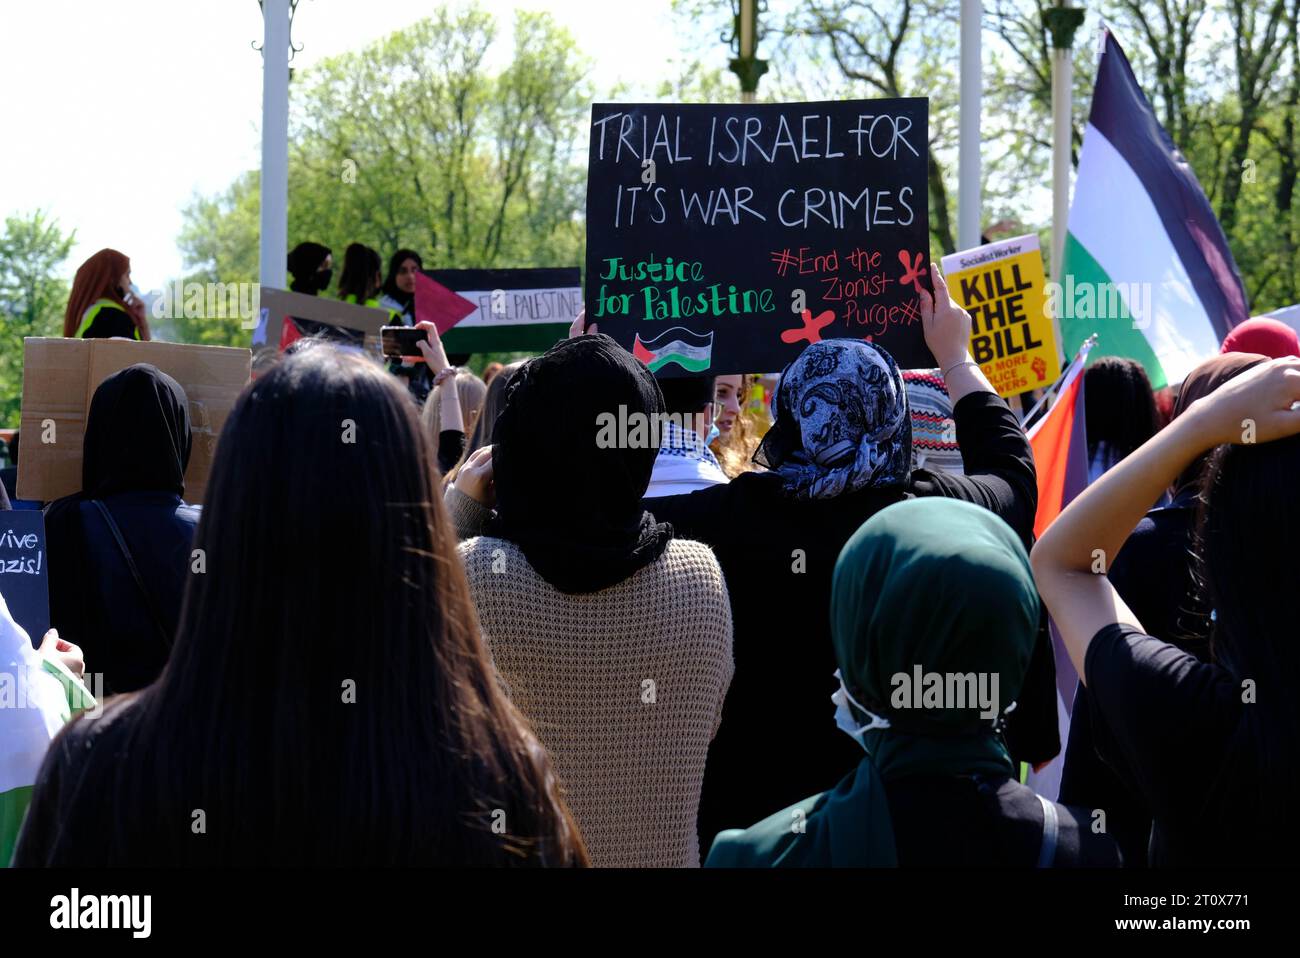 Hanley Park, Stoke on Trent, Regno Unito. 29 maggio 2021. I manifestanti marciano a Stoke su Trent chiedendo la libertà per la Palestina e la fine dell'oppressione. Foto Stock